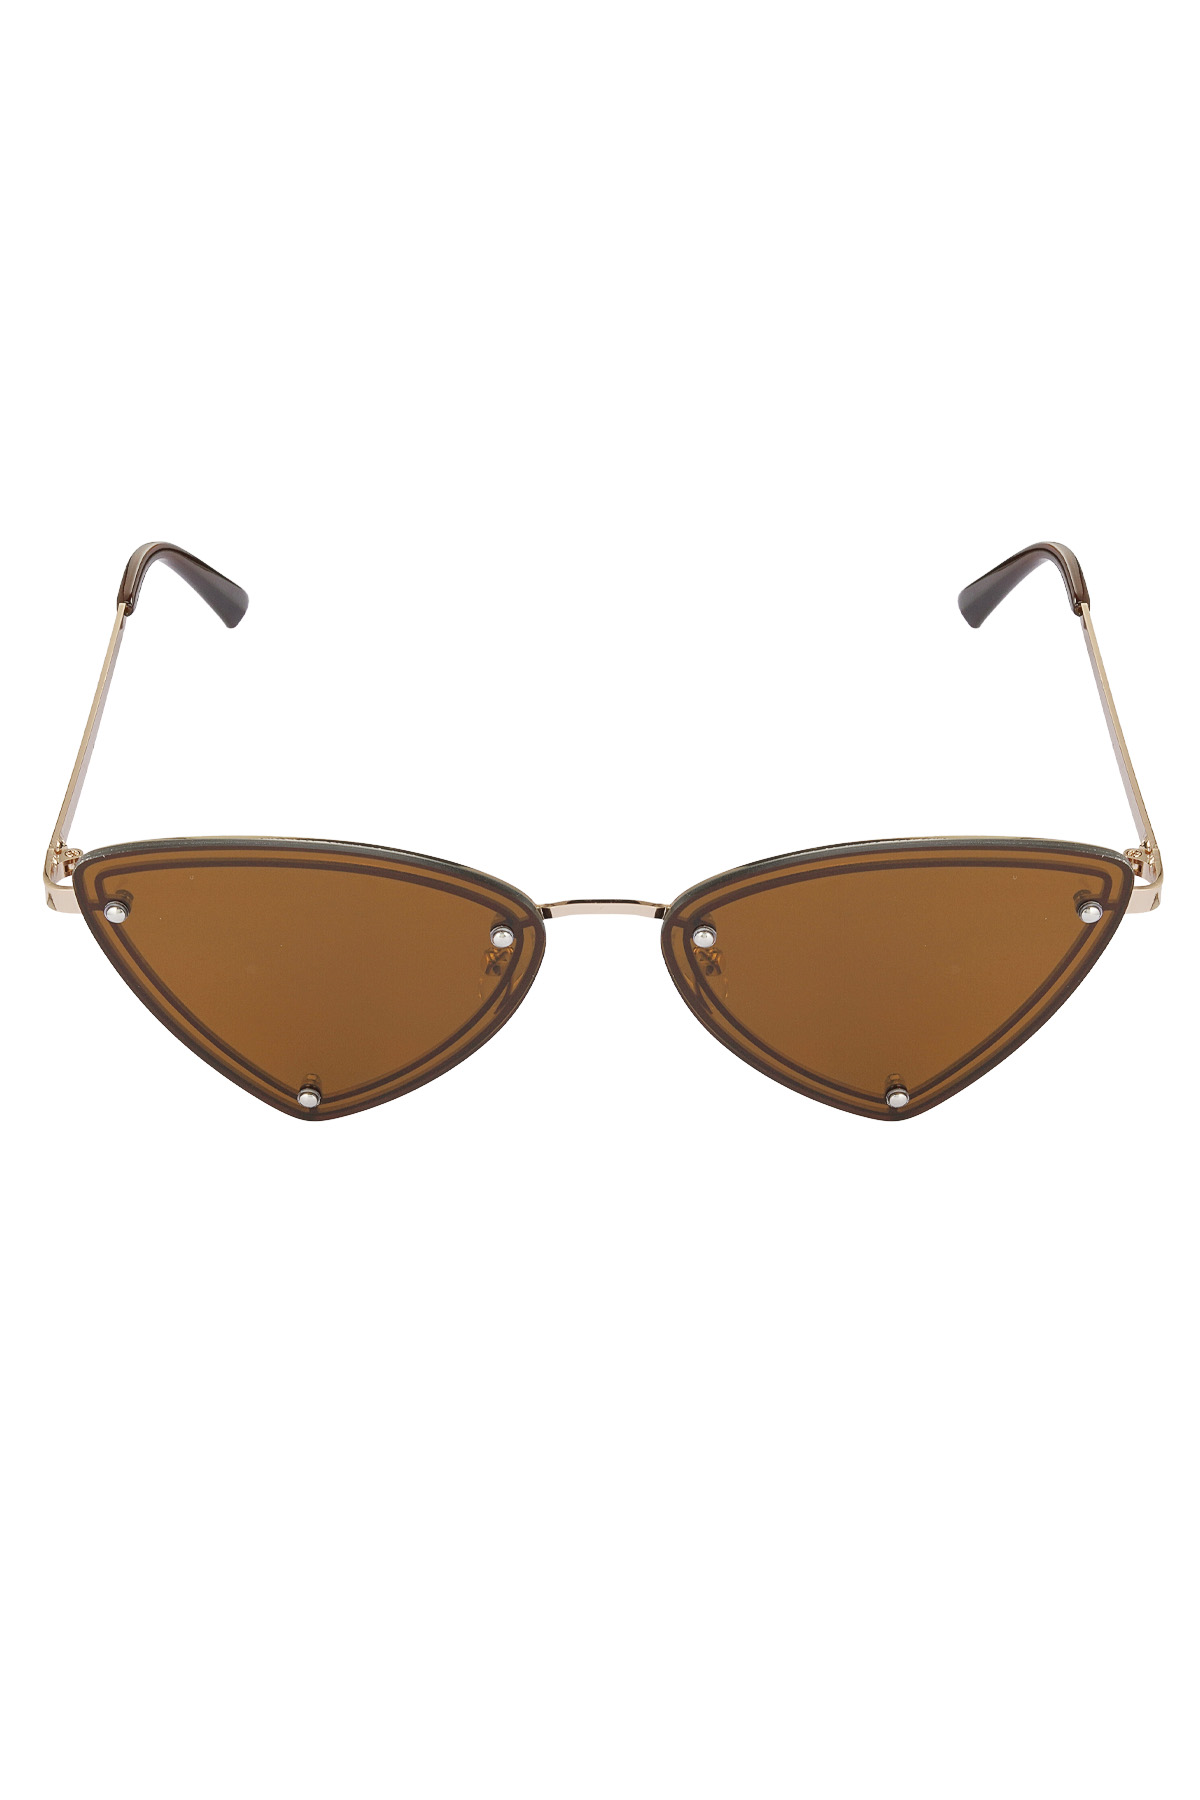 Retro party sunglasses - brown Picture4